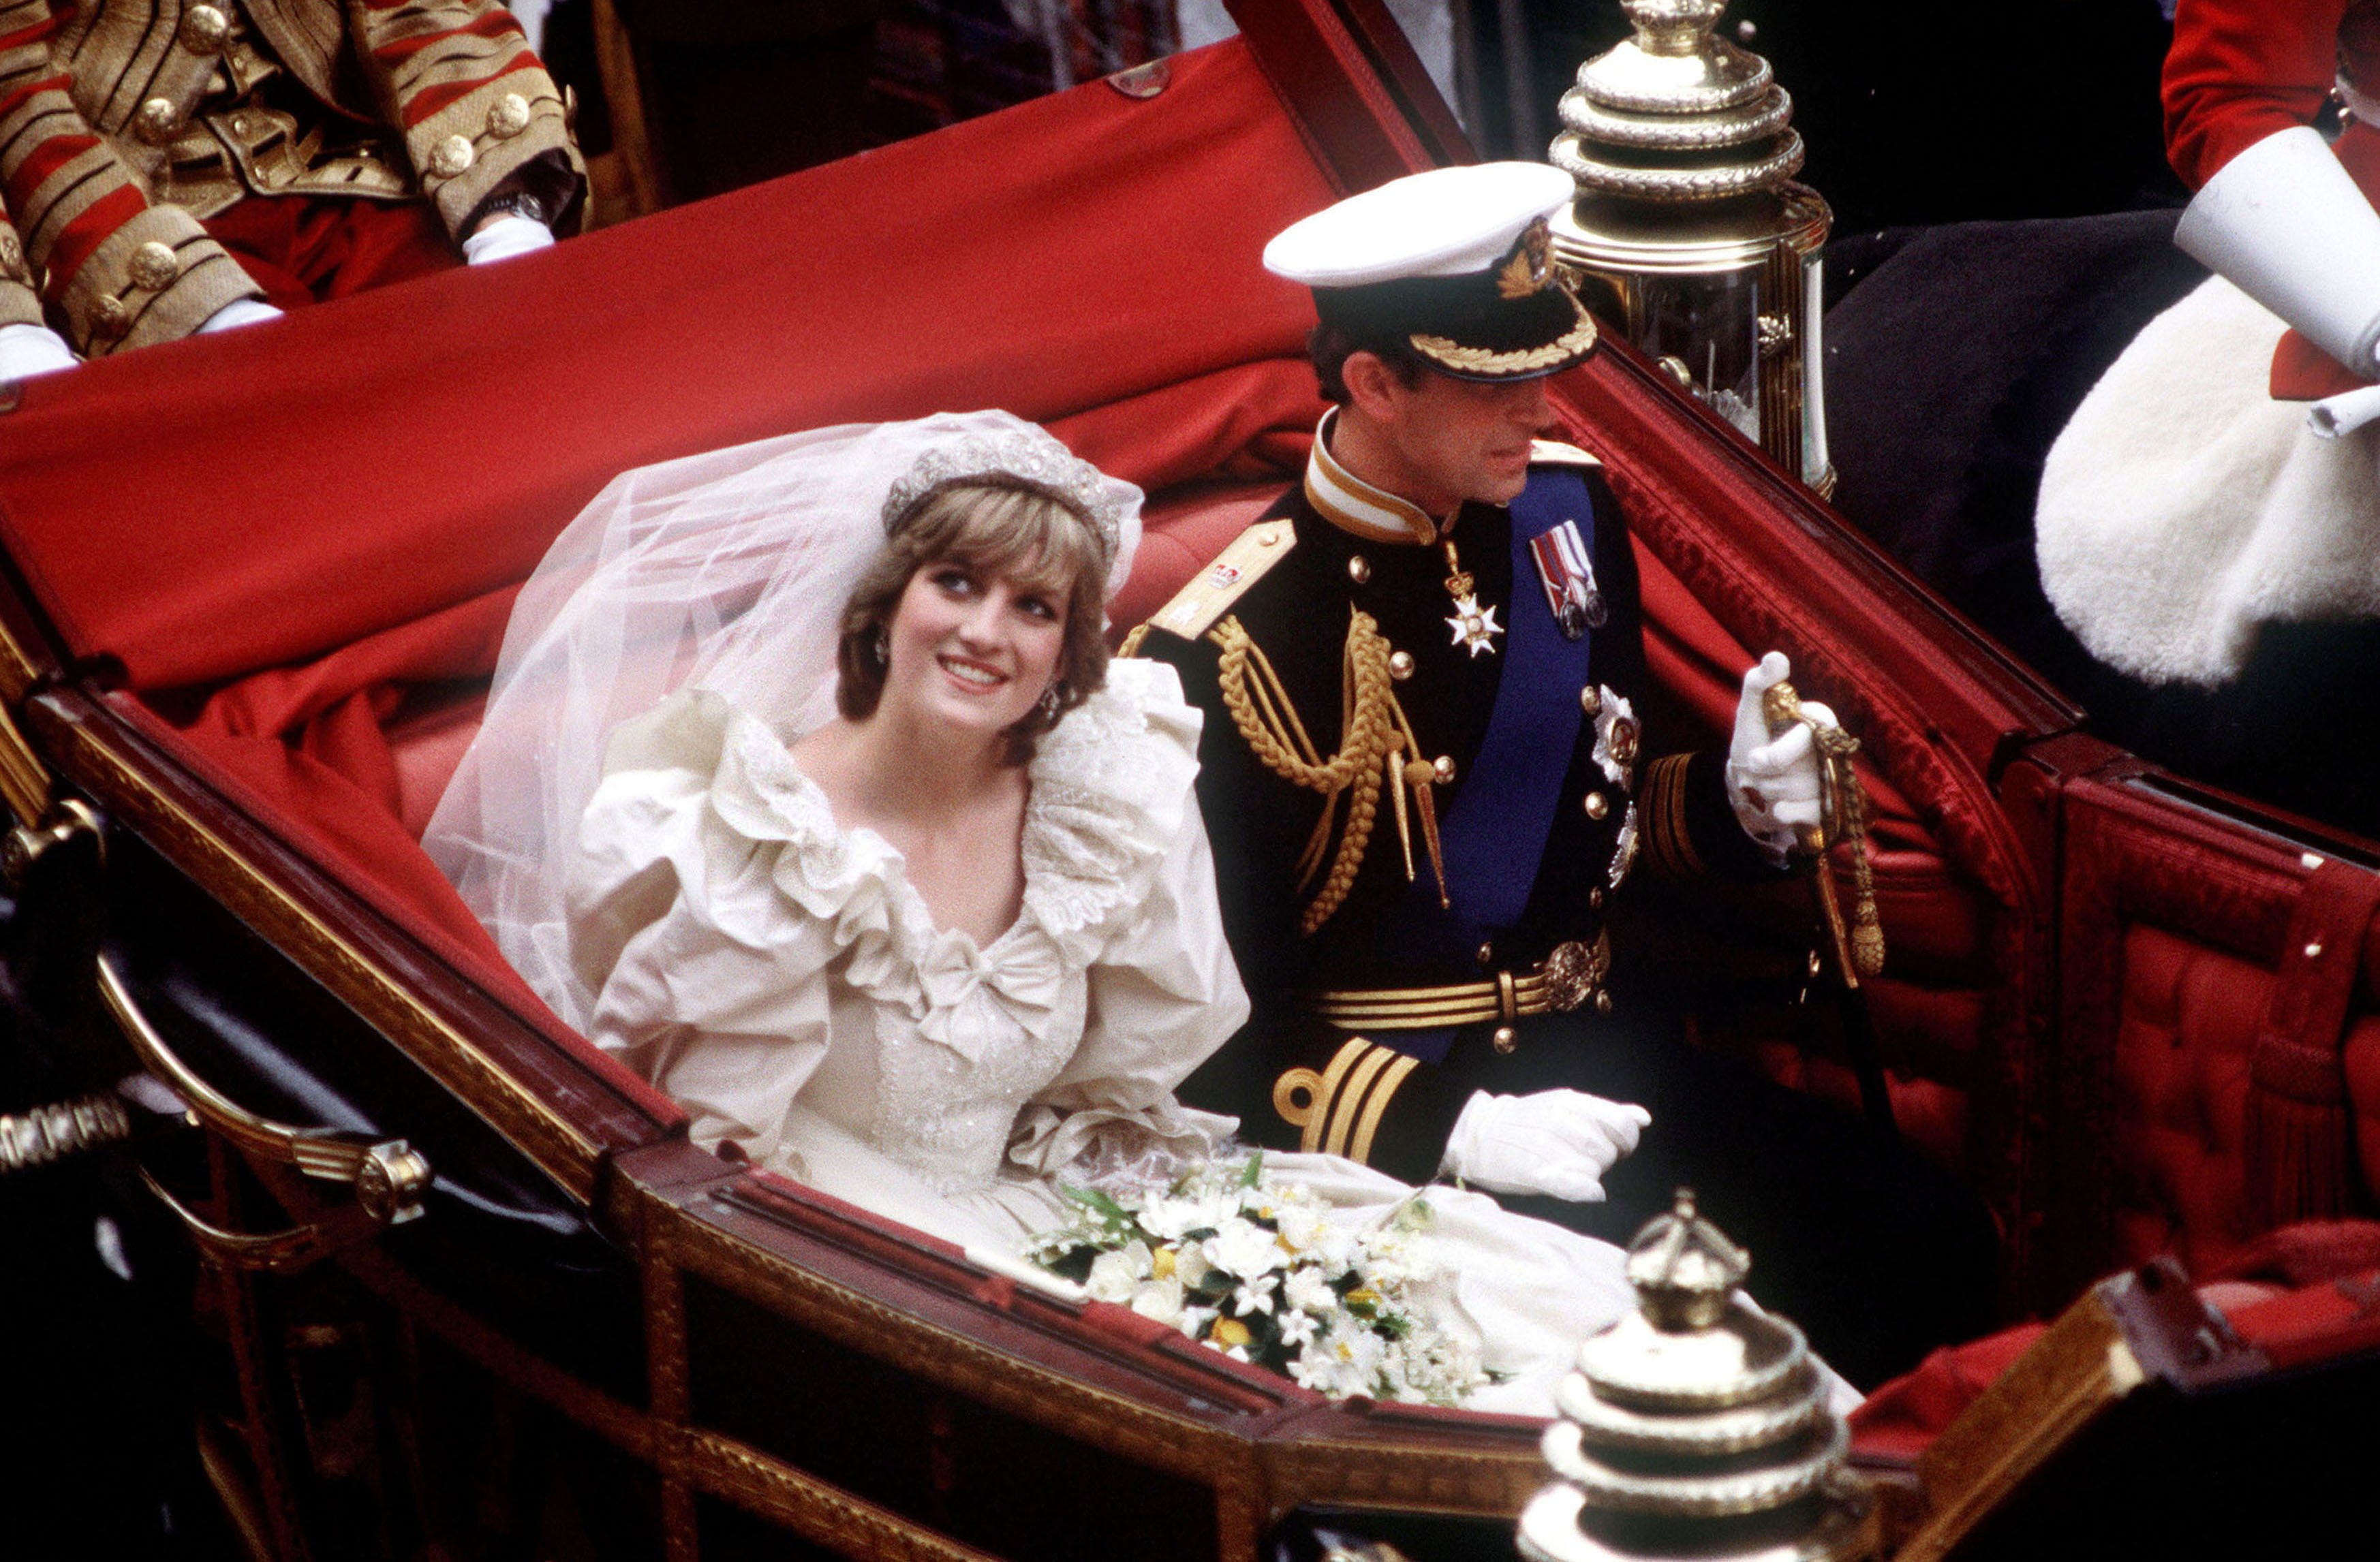 El príncipe y la princesa de Gales regresan al Palacio de Buckingham en carruaje tras su boda, el 29 de julio de 1981. | Foto: Getty Images